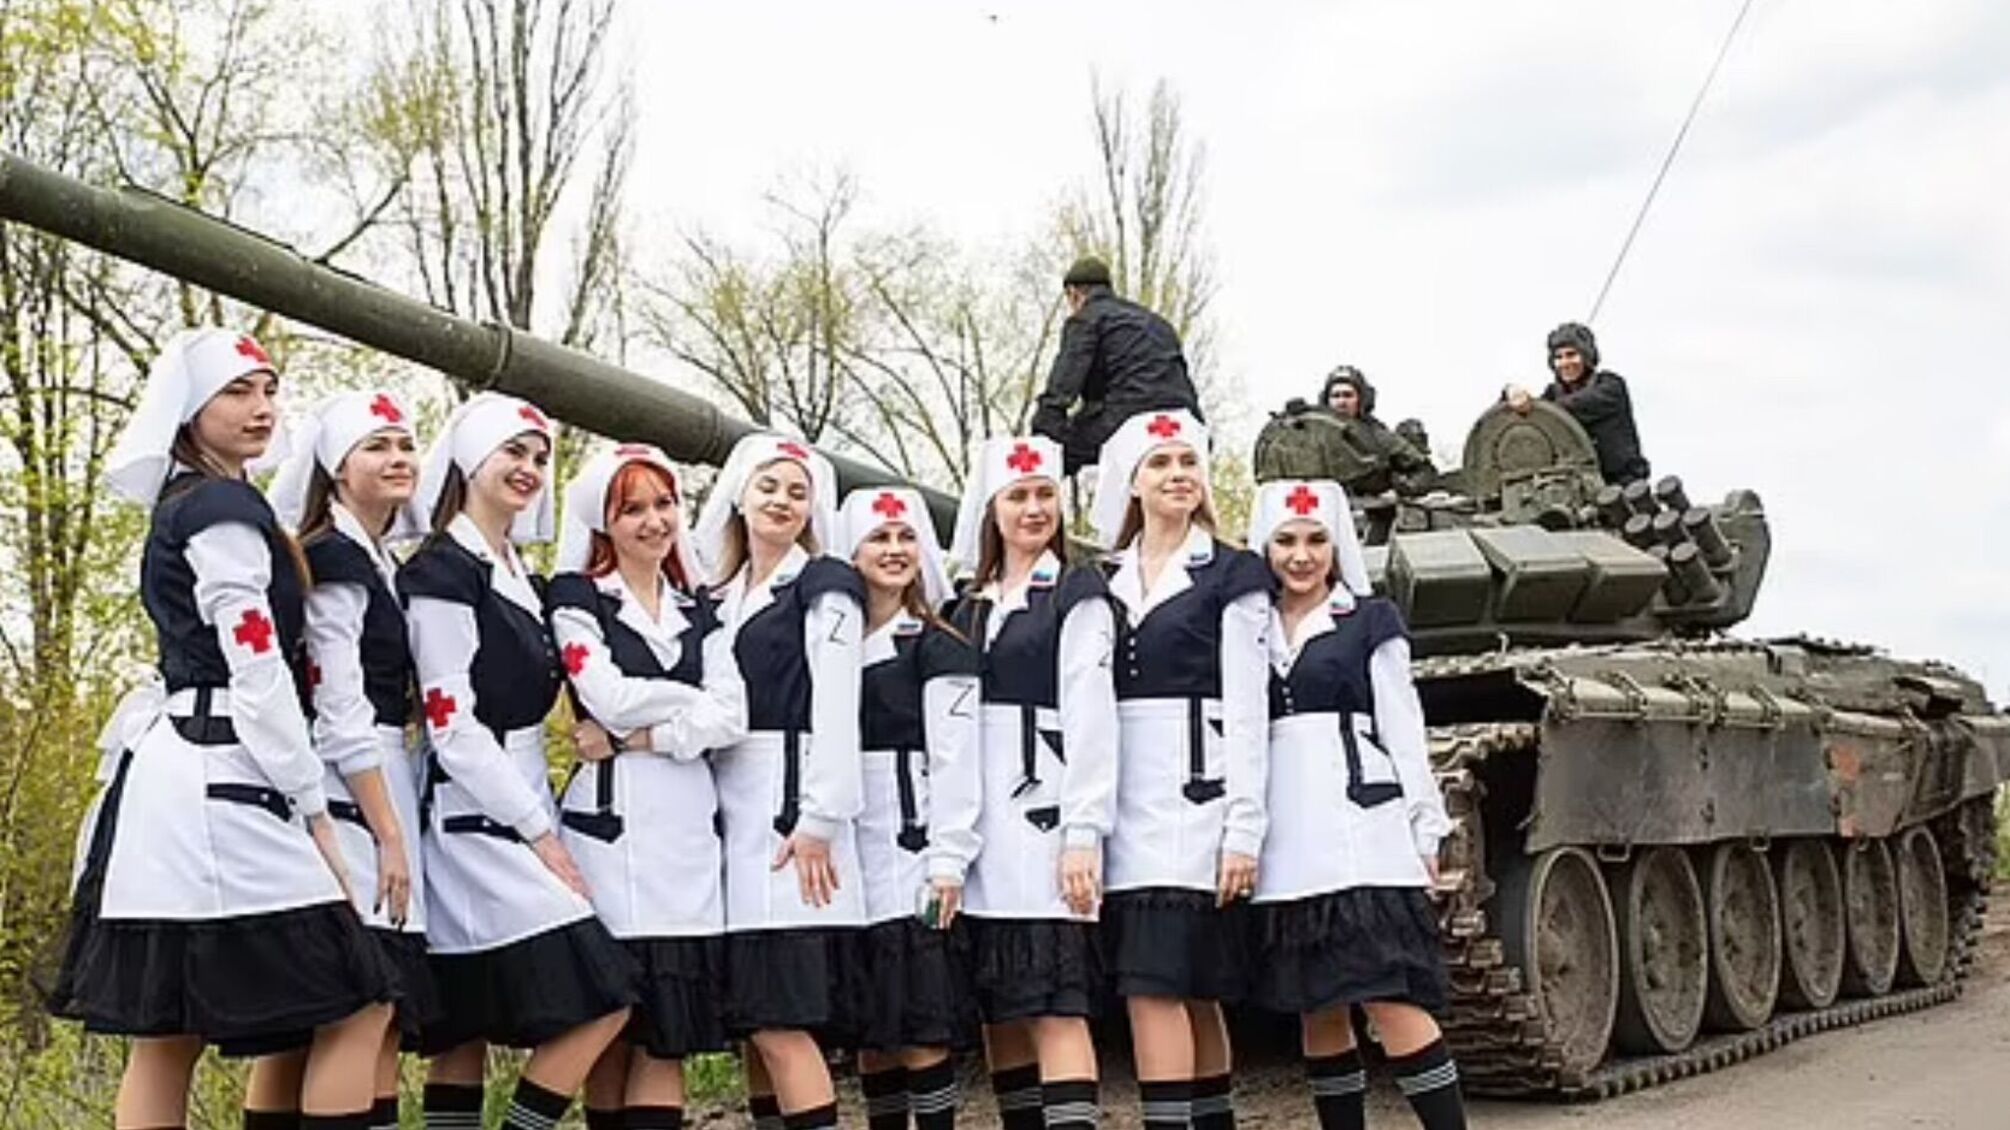 Співали частівки й позували біля танків: росія привезла на Луганщину псевдомедсестер